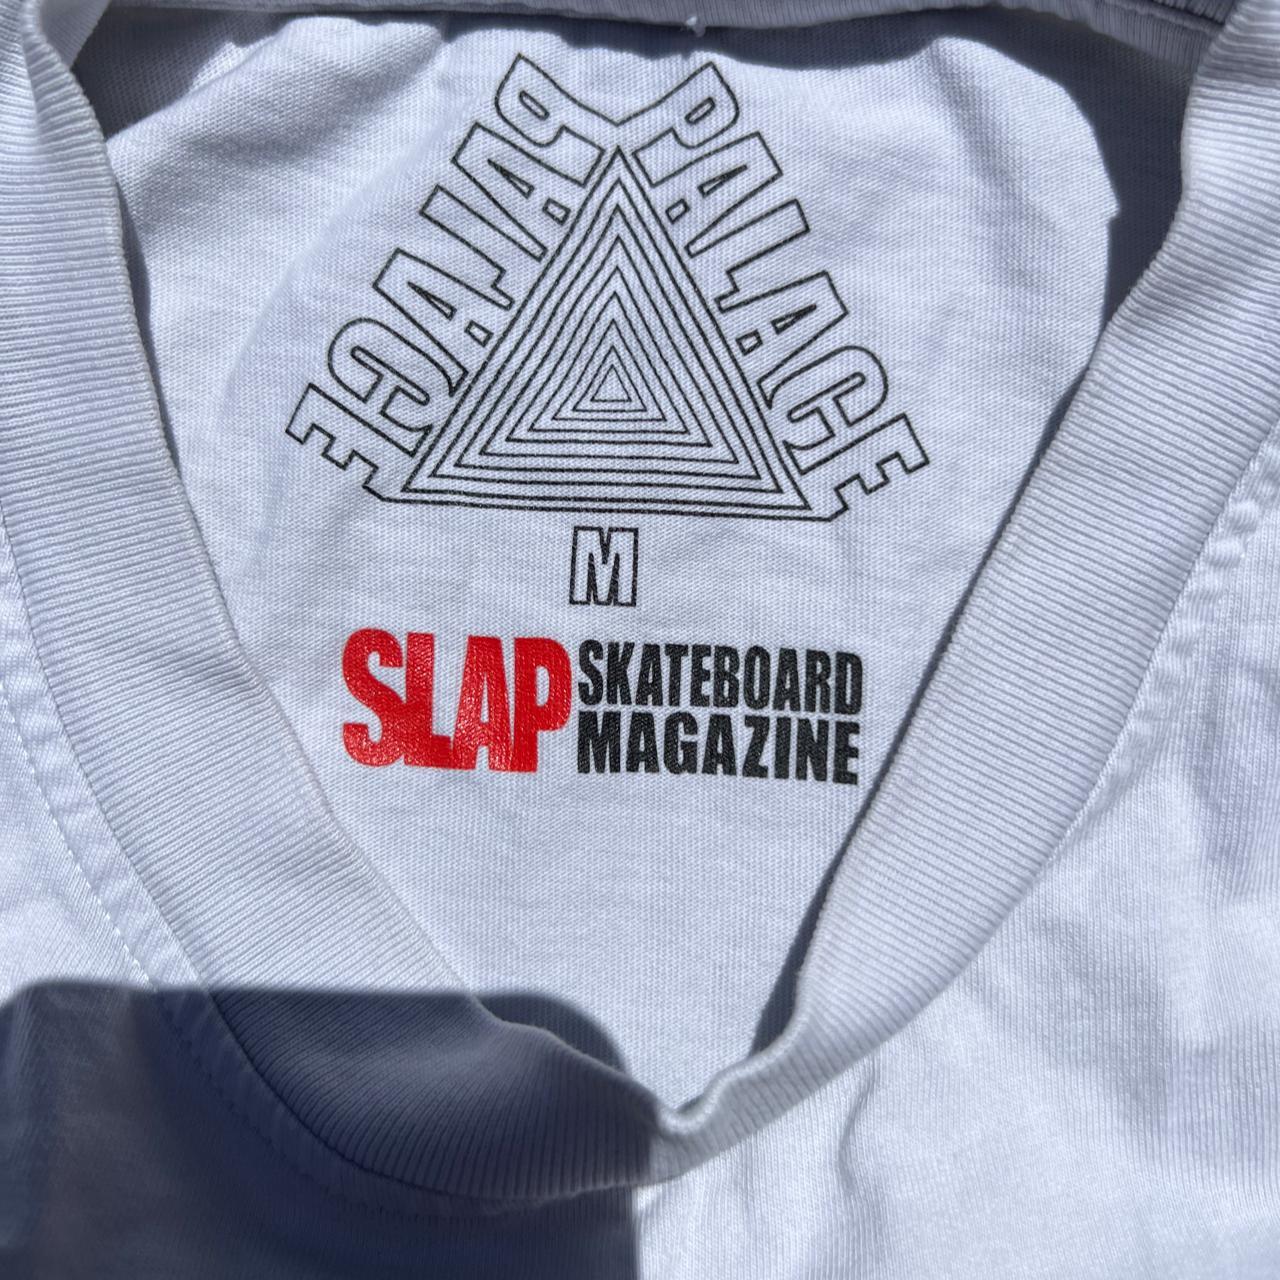 Palace Slap Mag Cover T-Shirt